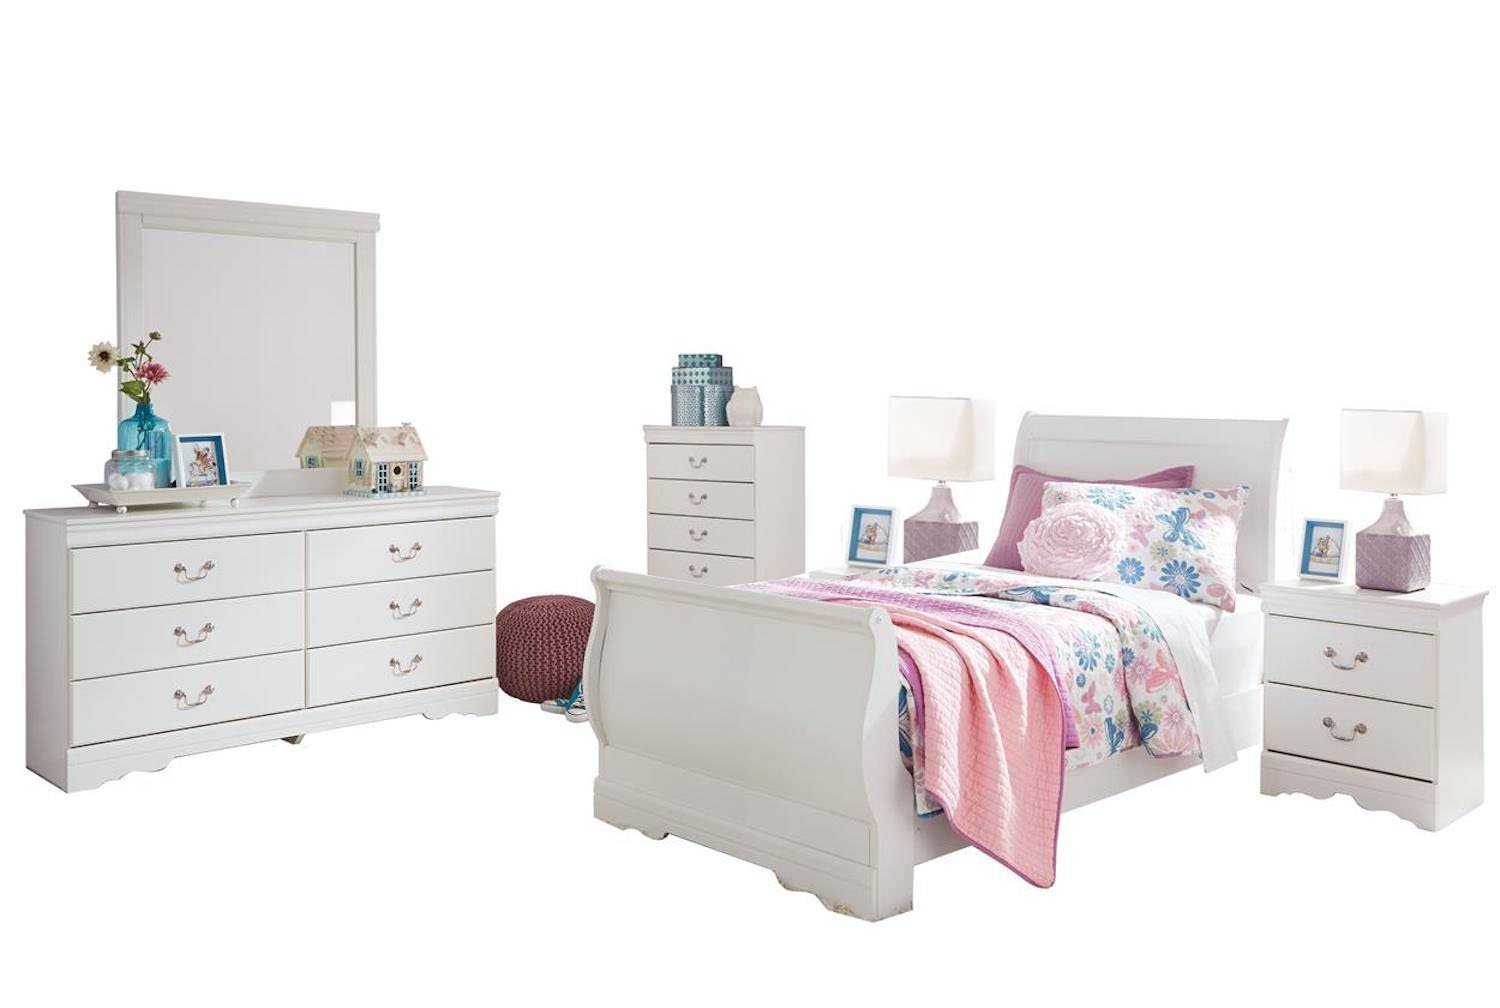 ashley furniture girl bedroom set